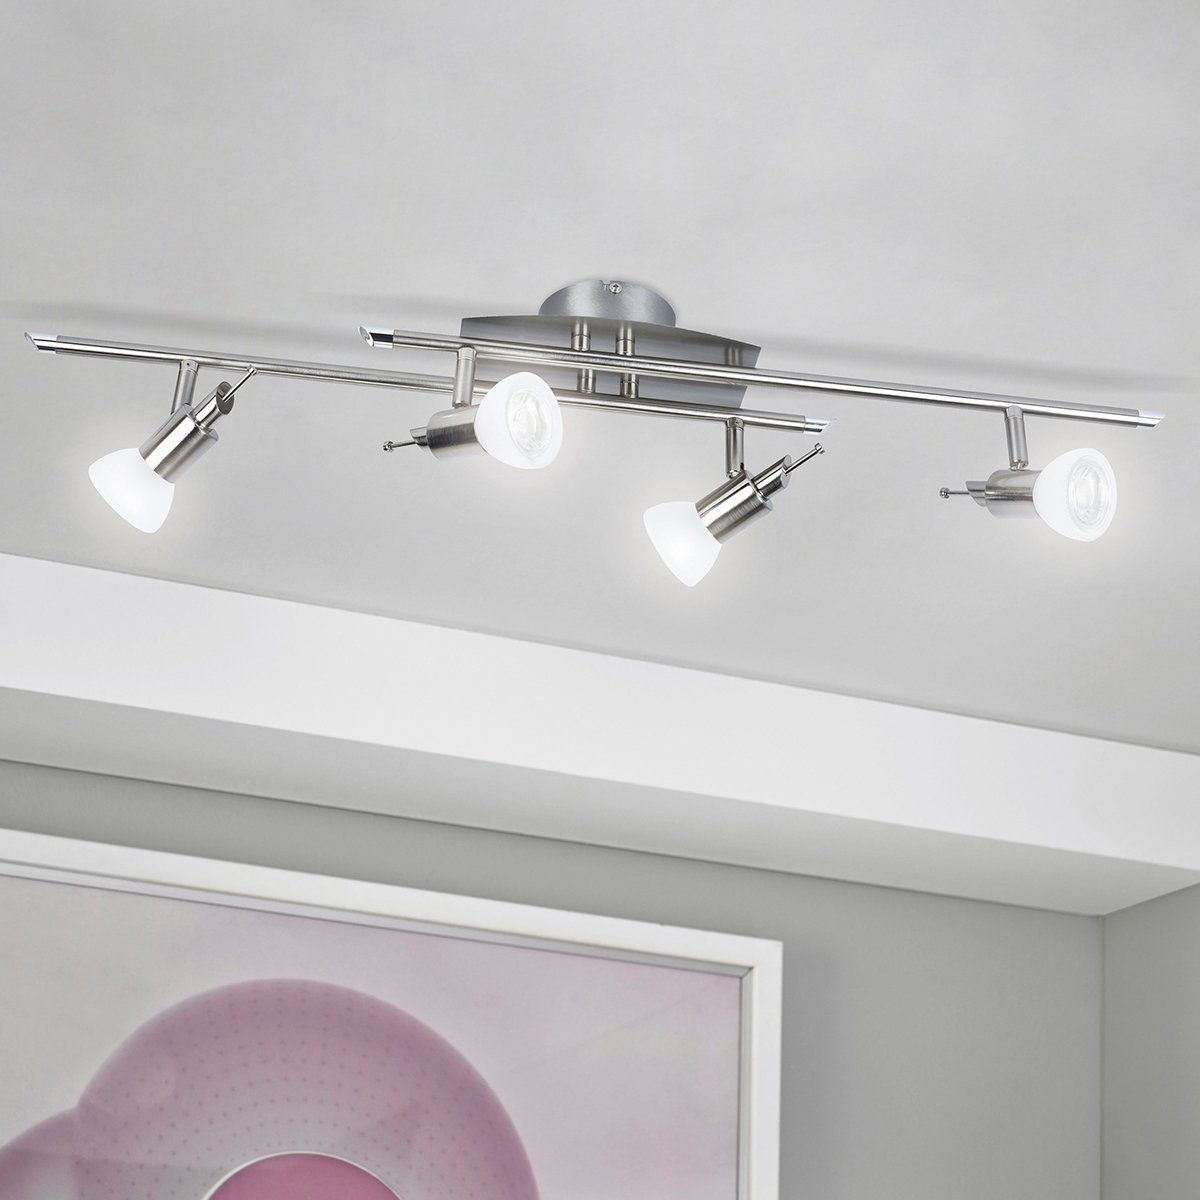 LED Lampe Decken, D81-1, Deckenlampe, LED, MeLiTec Beleuchtung, Design, Deckenleuchte Deckenstrahler, Wohnzimmer,